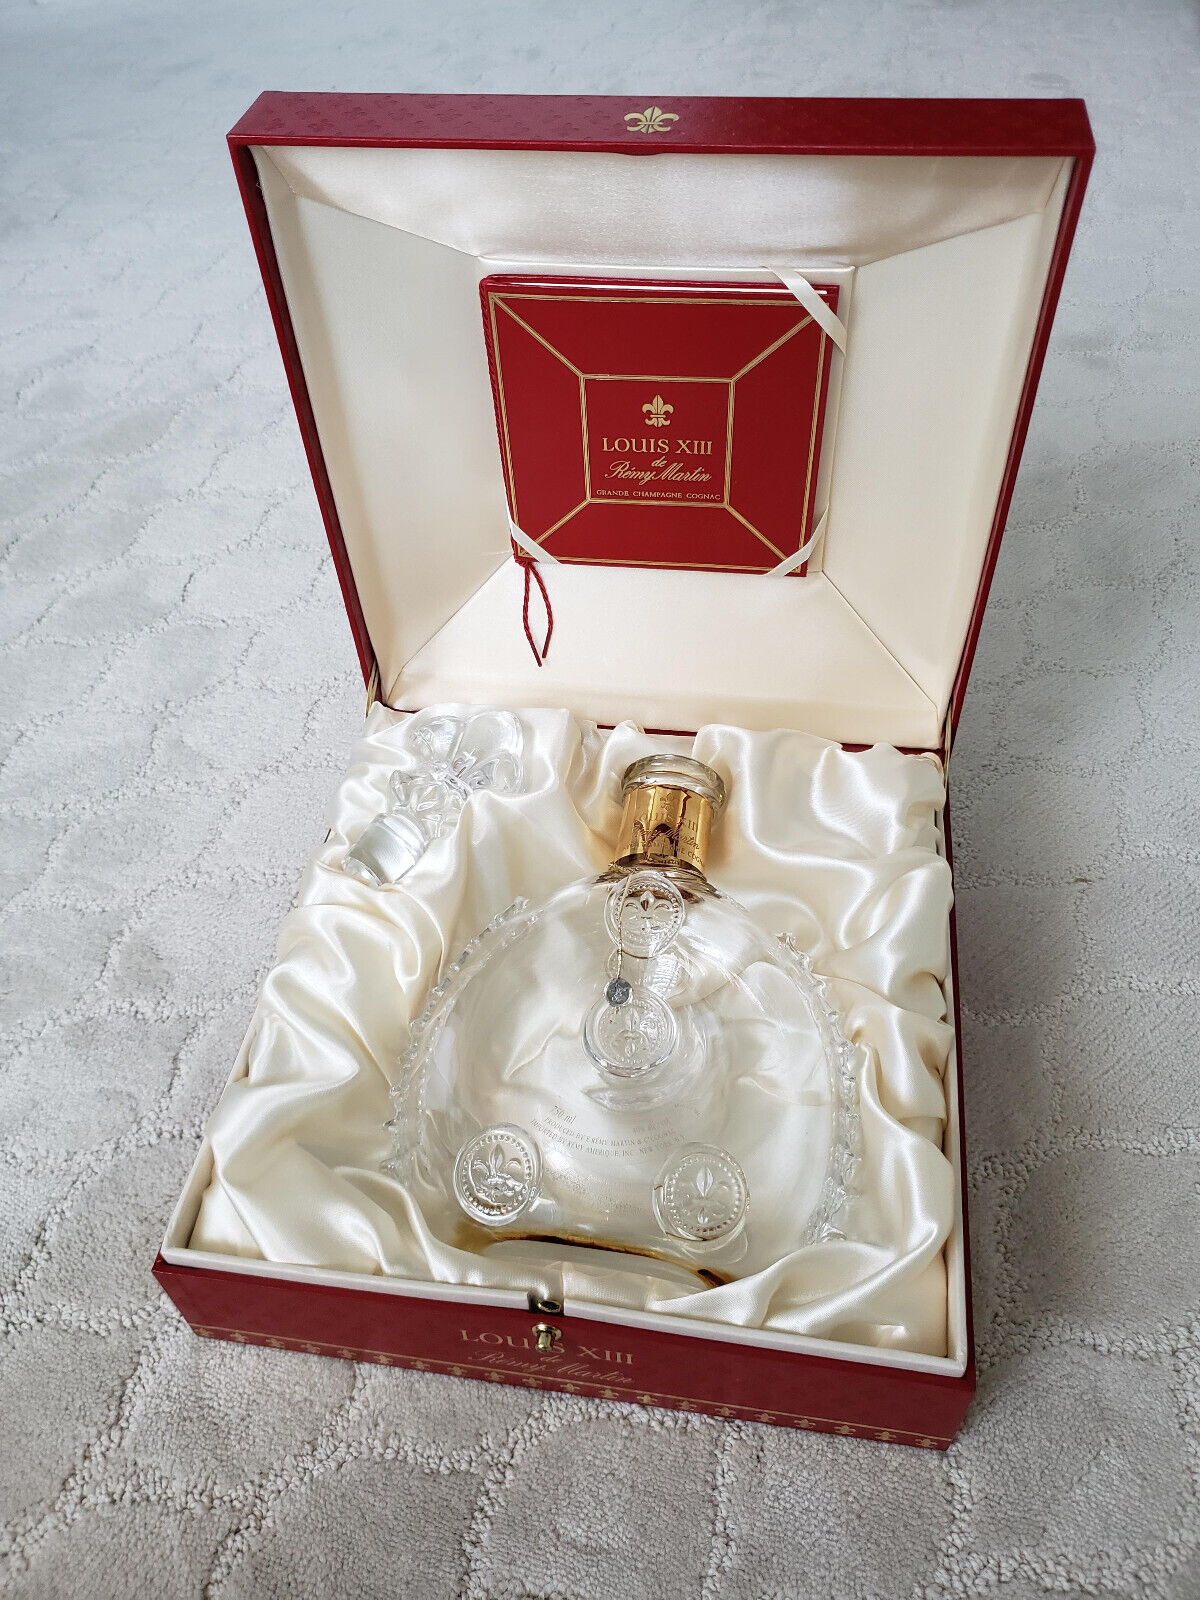 Remy Martin Louis XIII Cognac Baccarat Crystal Empty 750ml Bottle w/ Casket Box